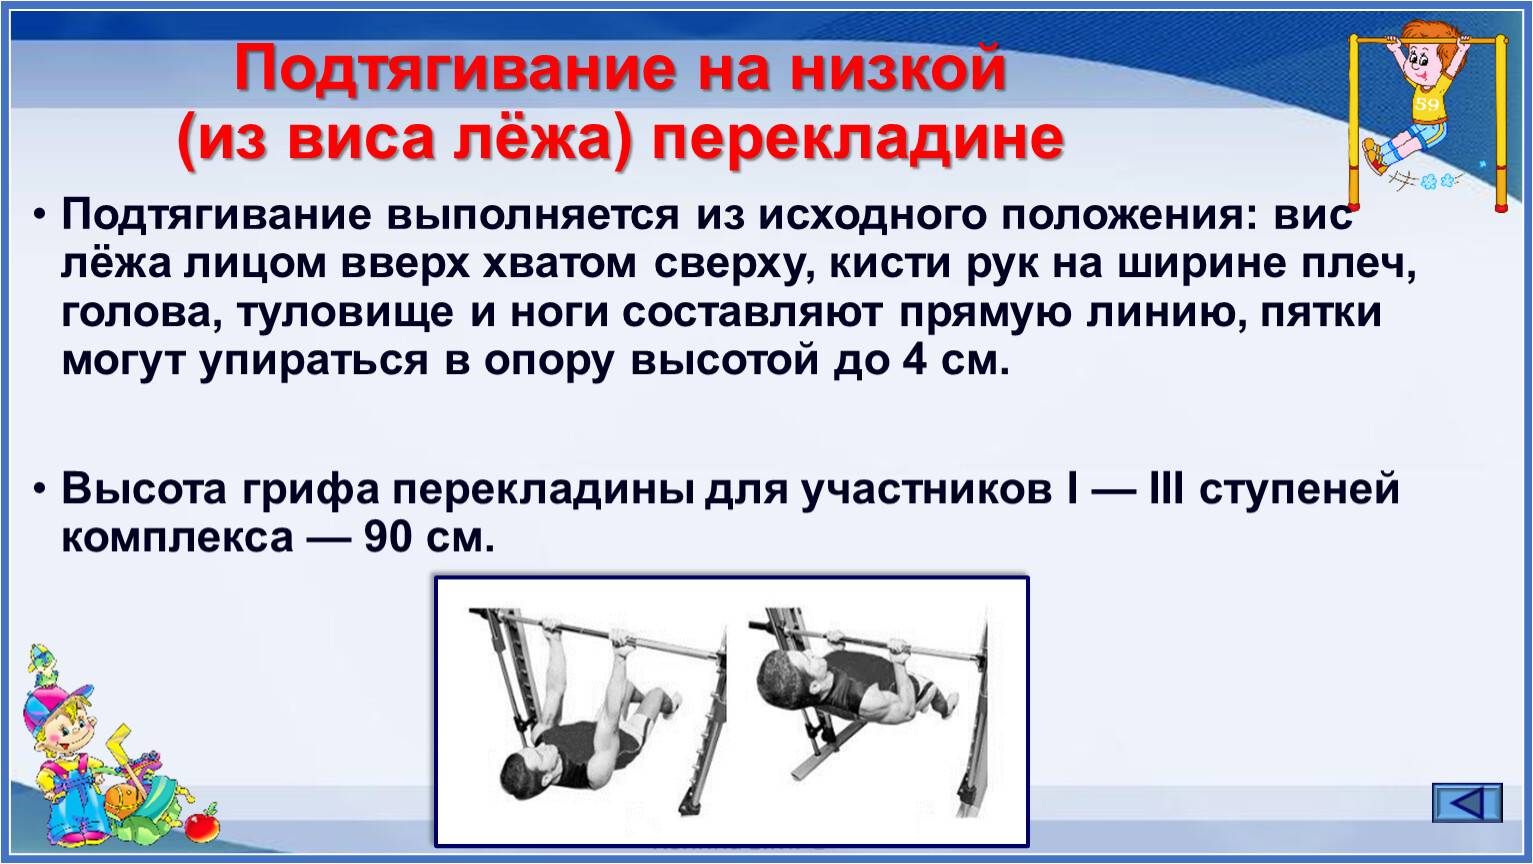 Подтягивания на низкой перекладине из виса лежа - одно из лучших упражнений для мышц спины